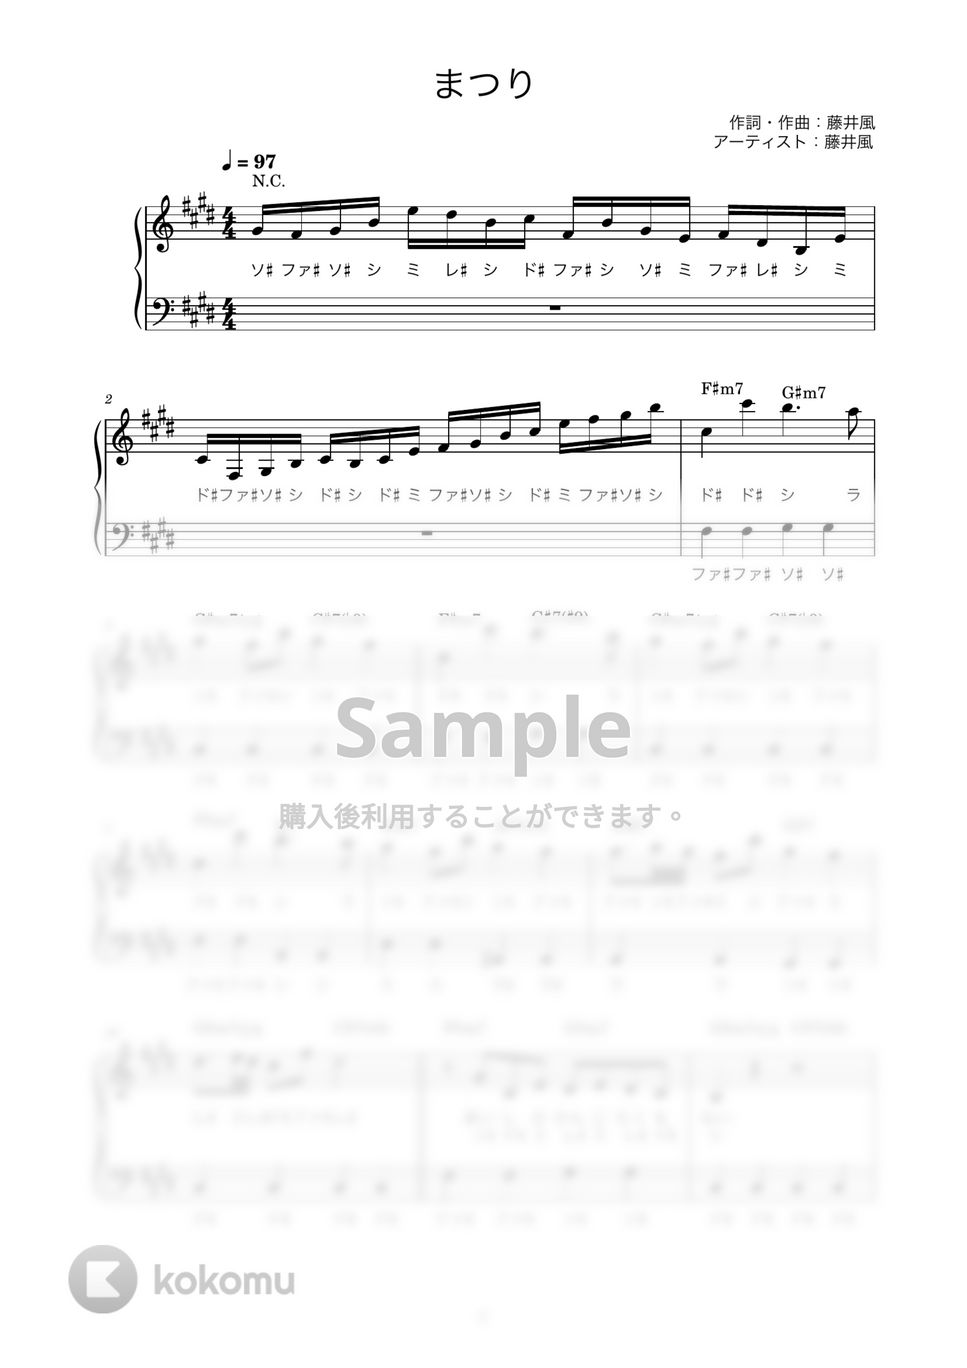 藤井風 - まつり (かんたん / 歌詞付き / ドレミ付き / 初心者) by piano.tokyo